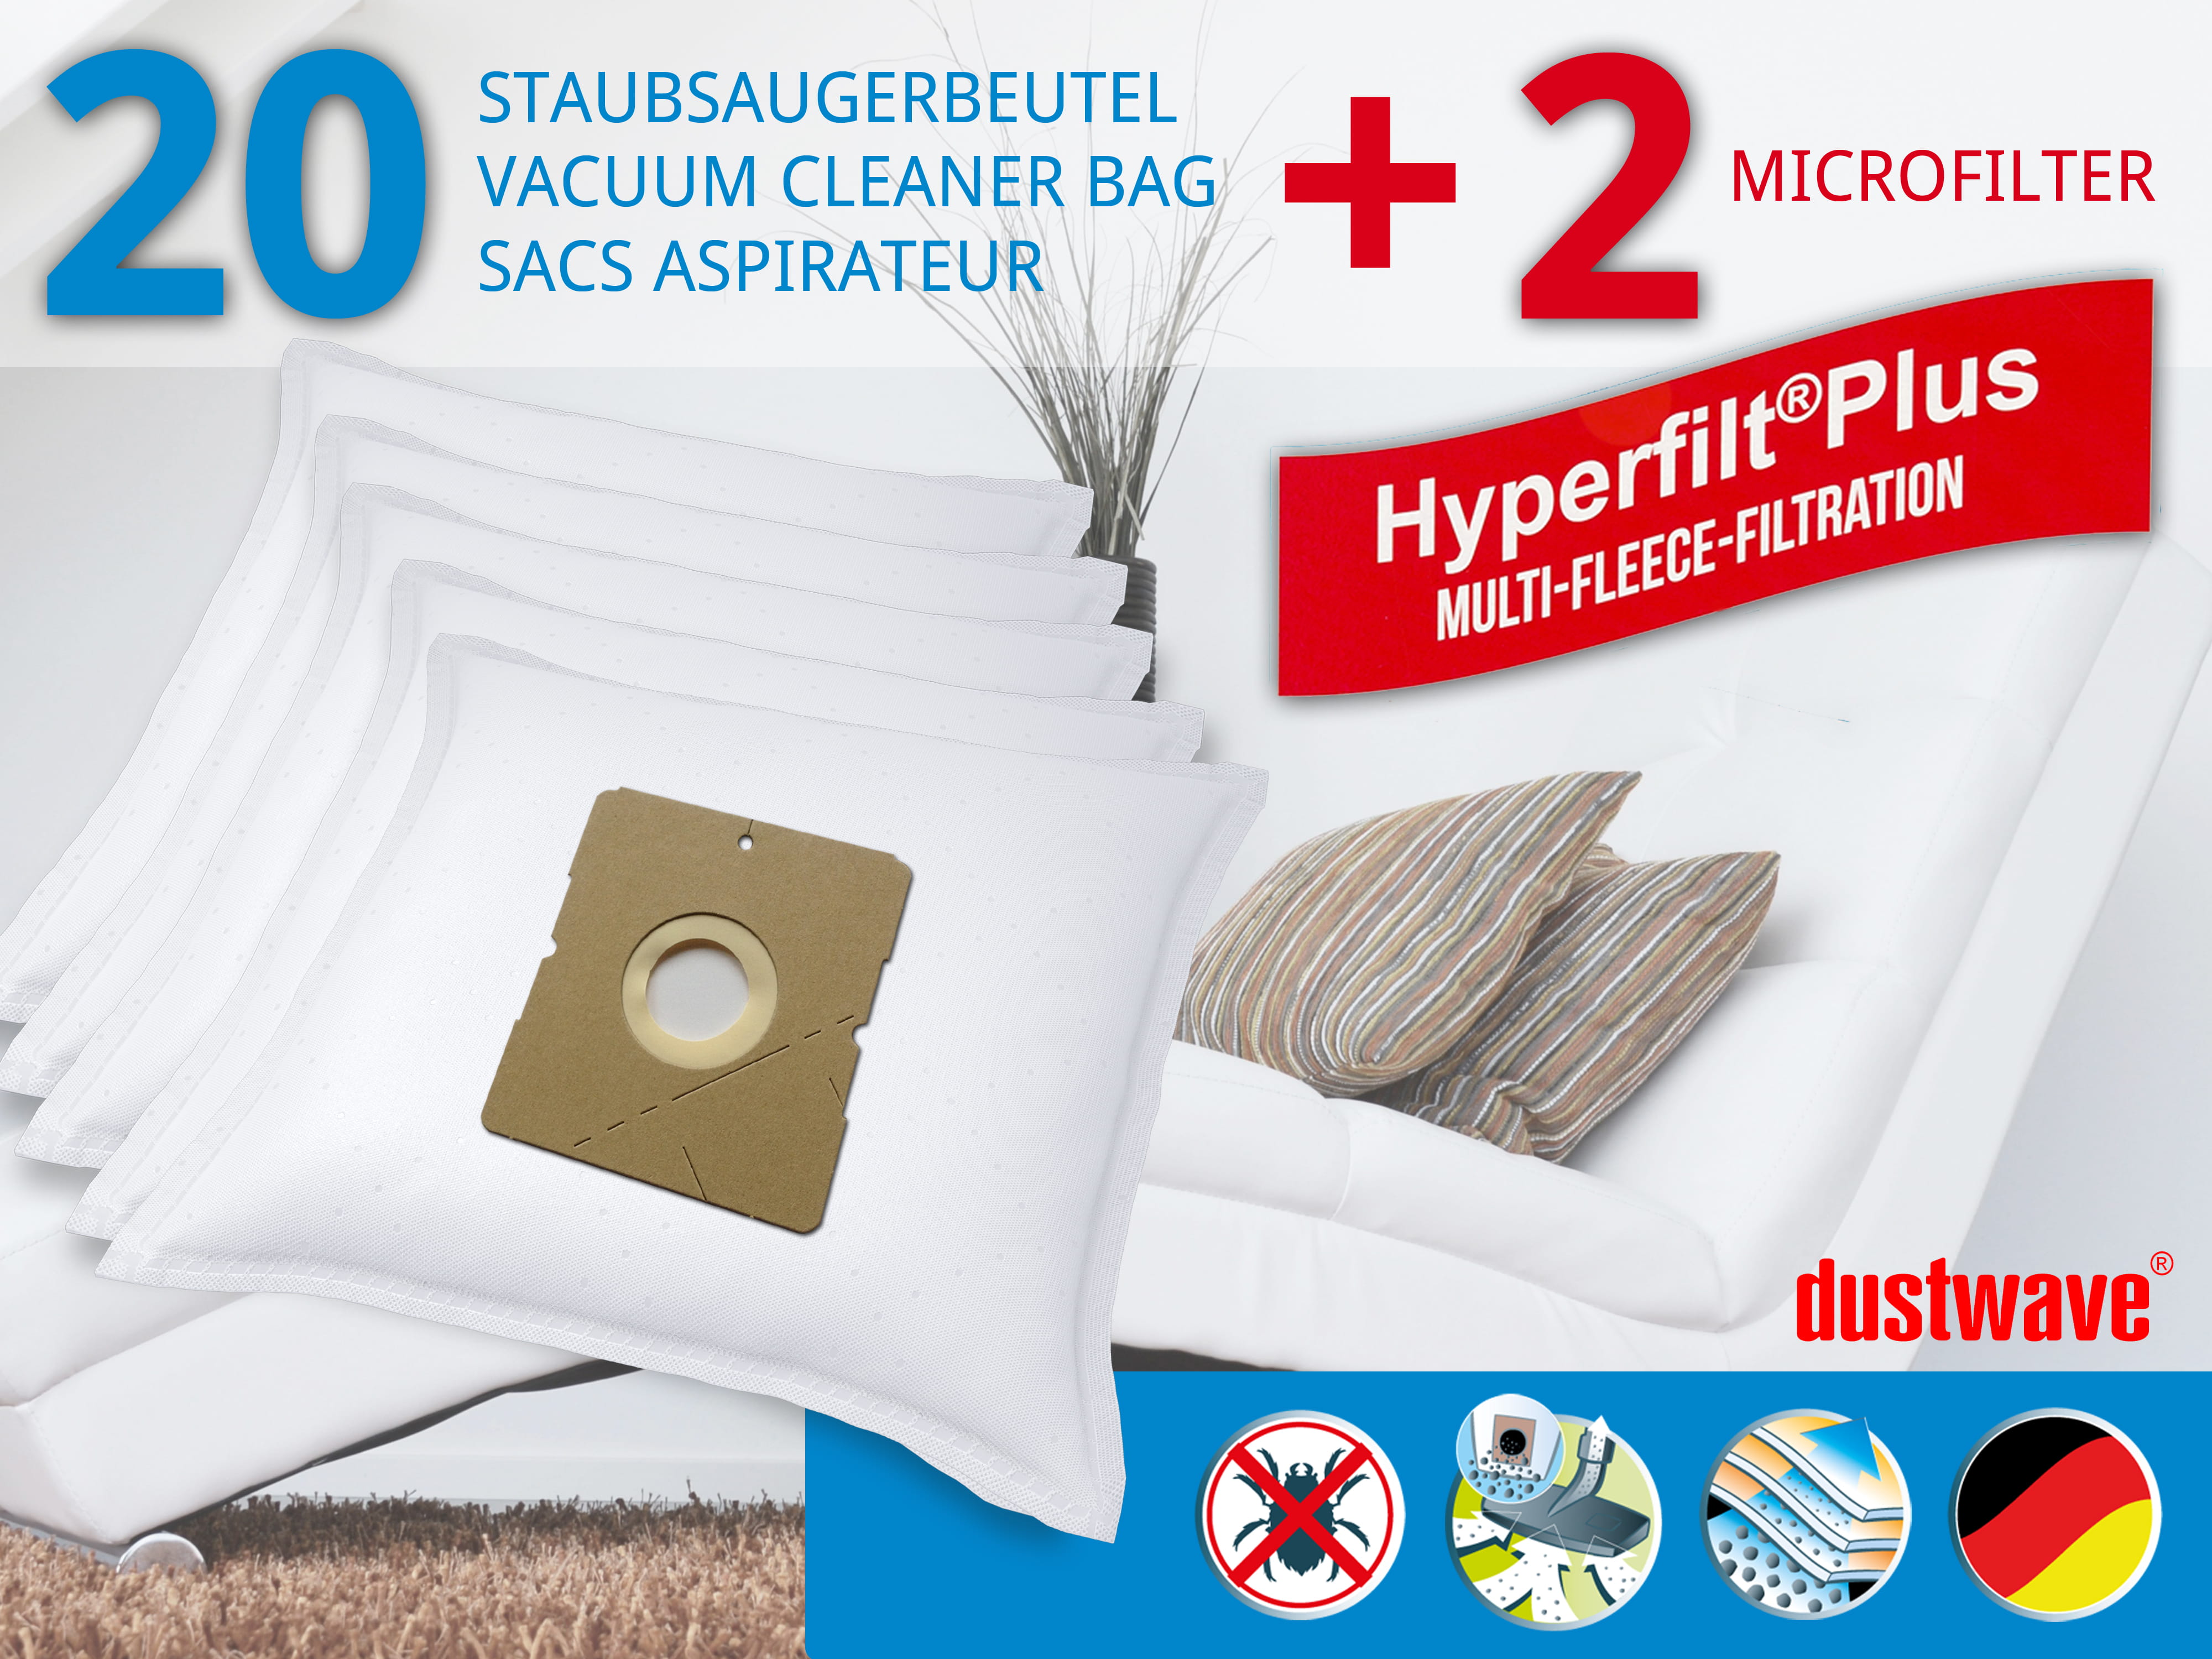 Dustwave® 20 Staubsaugerbeutel für Hoover TDC2000 011 - hocheffizient, mehrlagiges Mikrovlies mit Hygieneverschluss - Made in Germany